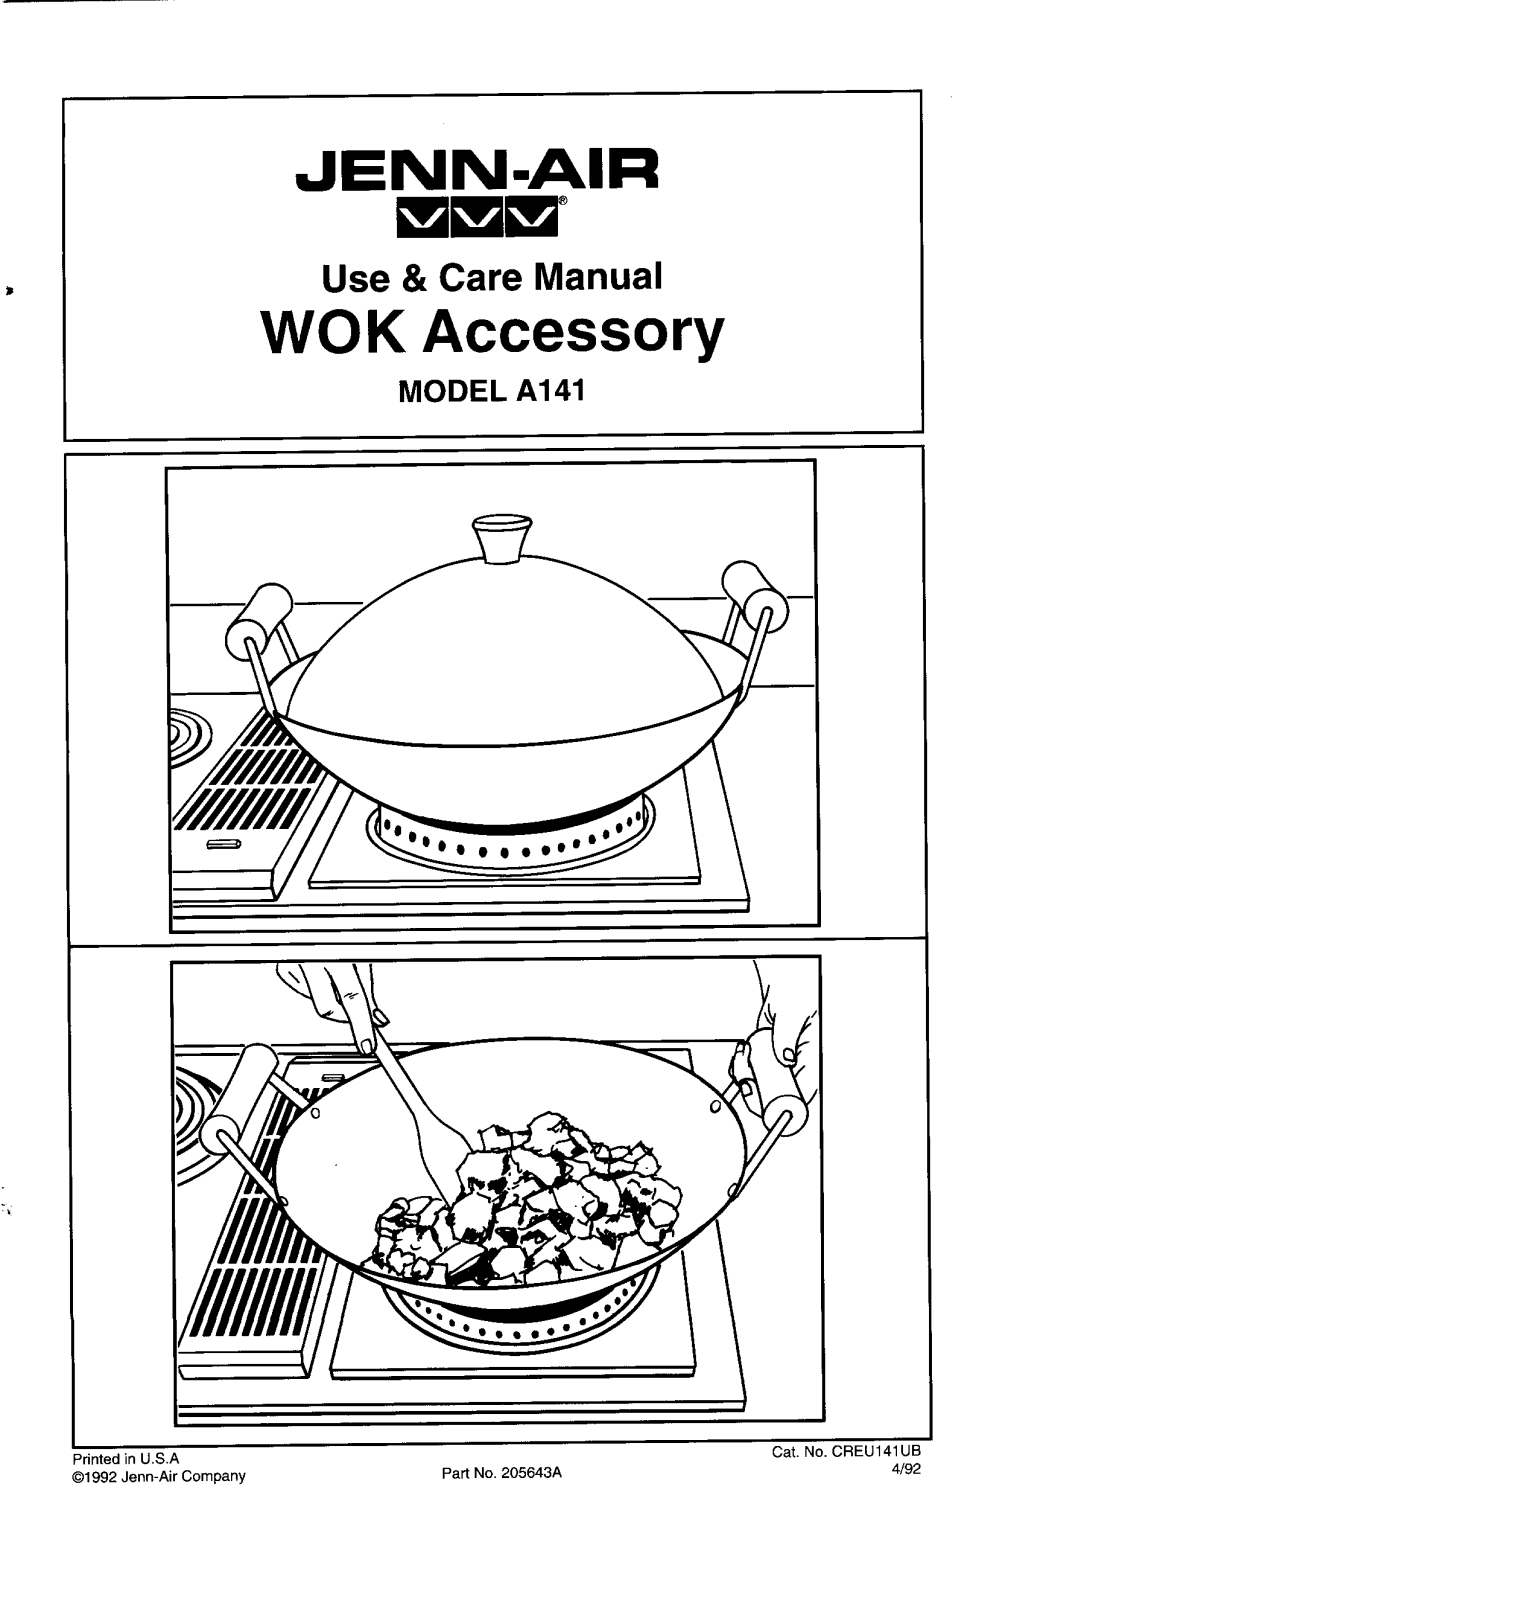 Jenn-Air A141, A141A Owner's Manual